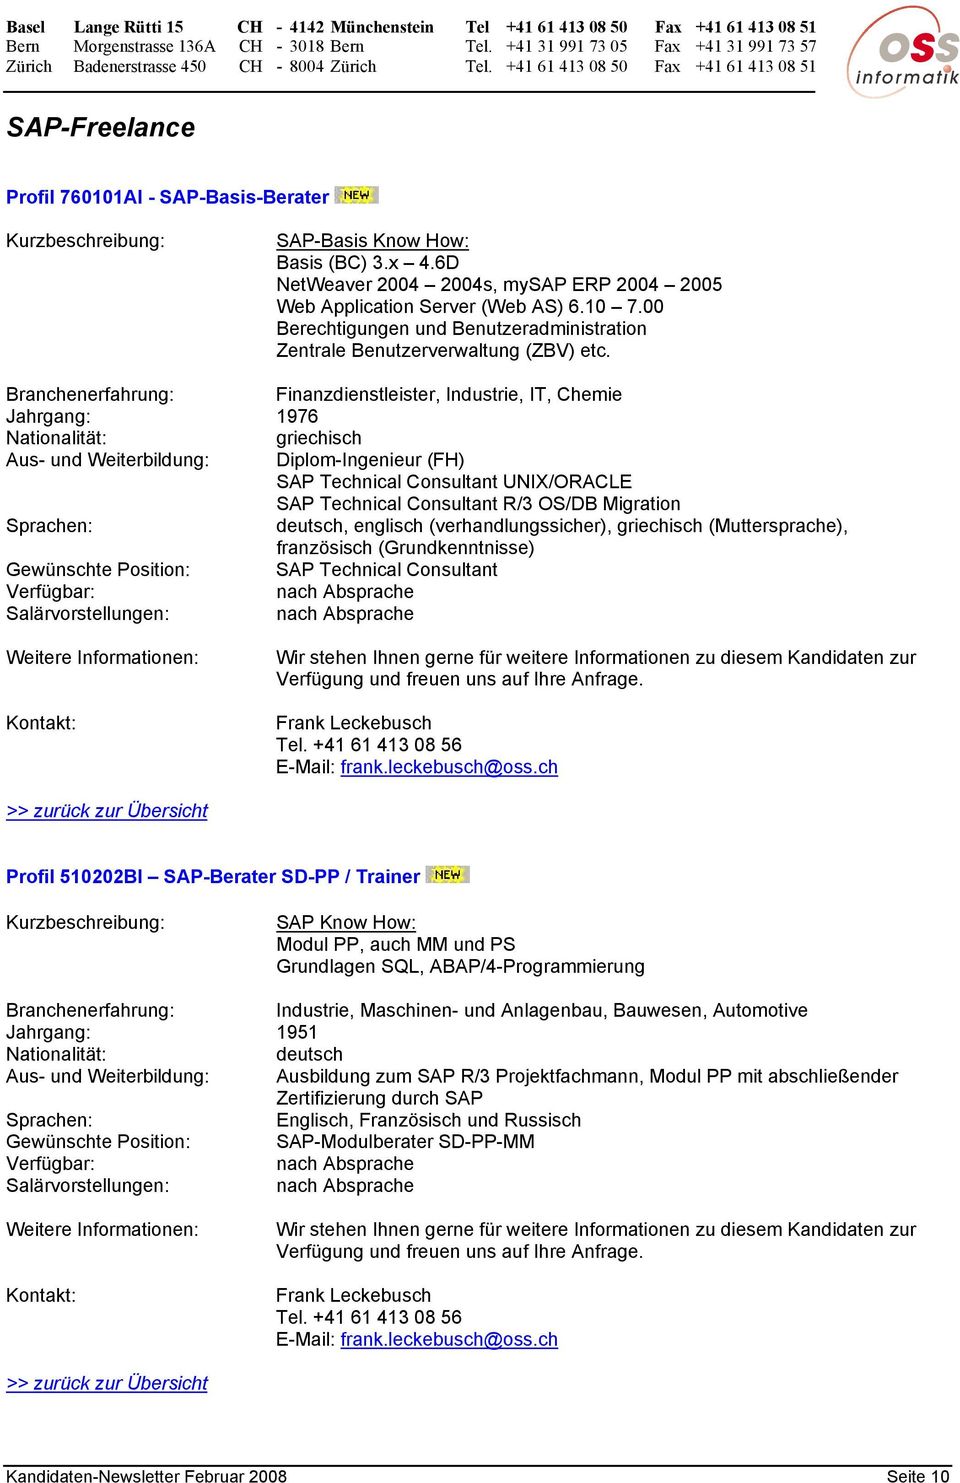 Finanzdienstleister, Industrie, IT, Chemie Jahrgang: 1976 griechisch Aus- und Weiterbildung: Diplom-Ingenieur (FH) SAP Technical Consultant UNIX/ORACLE SAP Technical Consultant R/3 OS/DB Migration